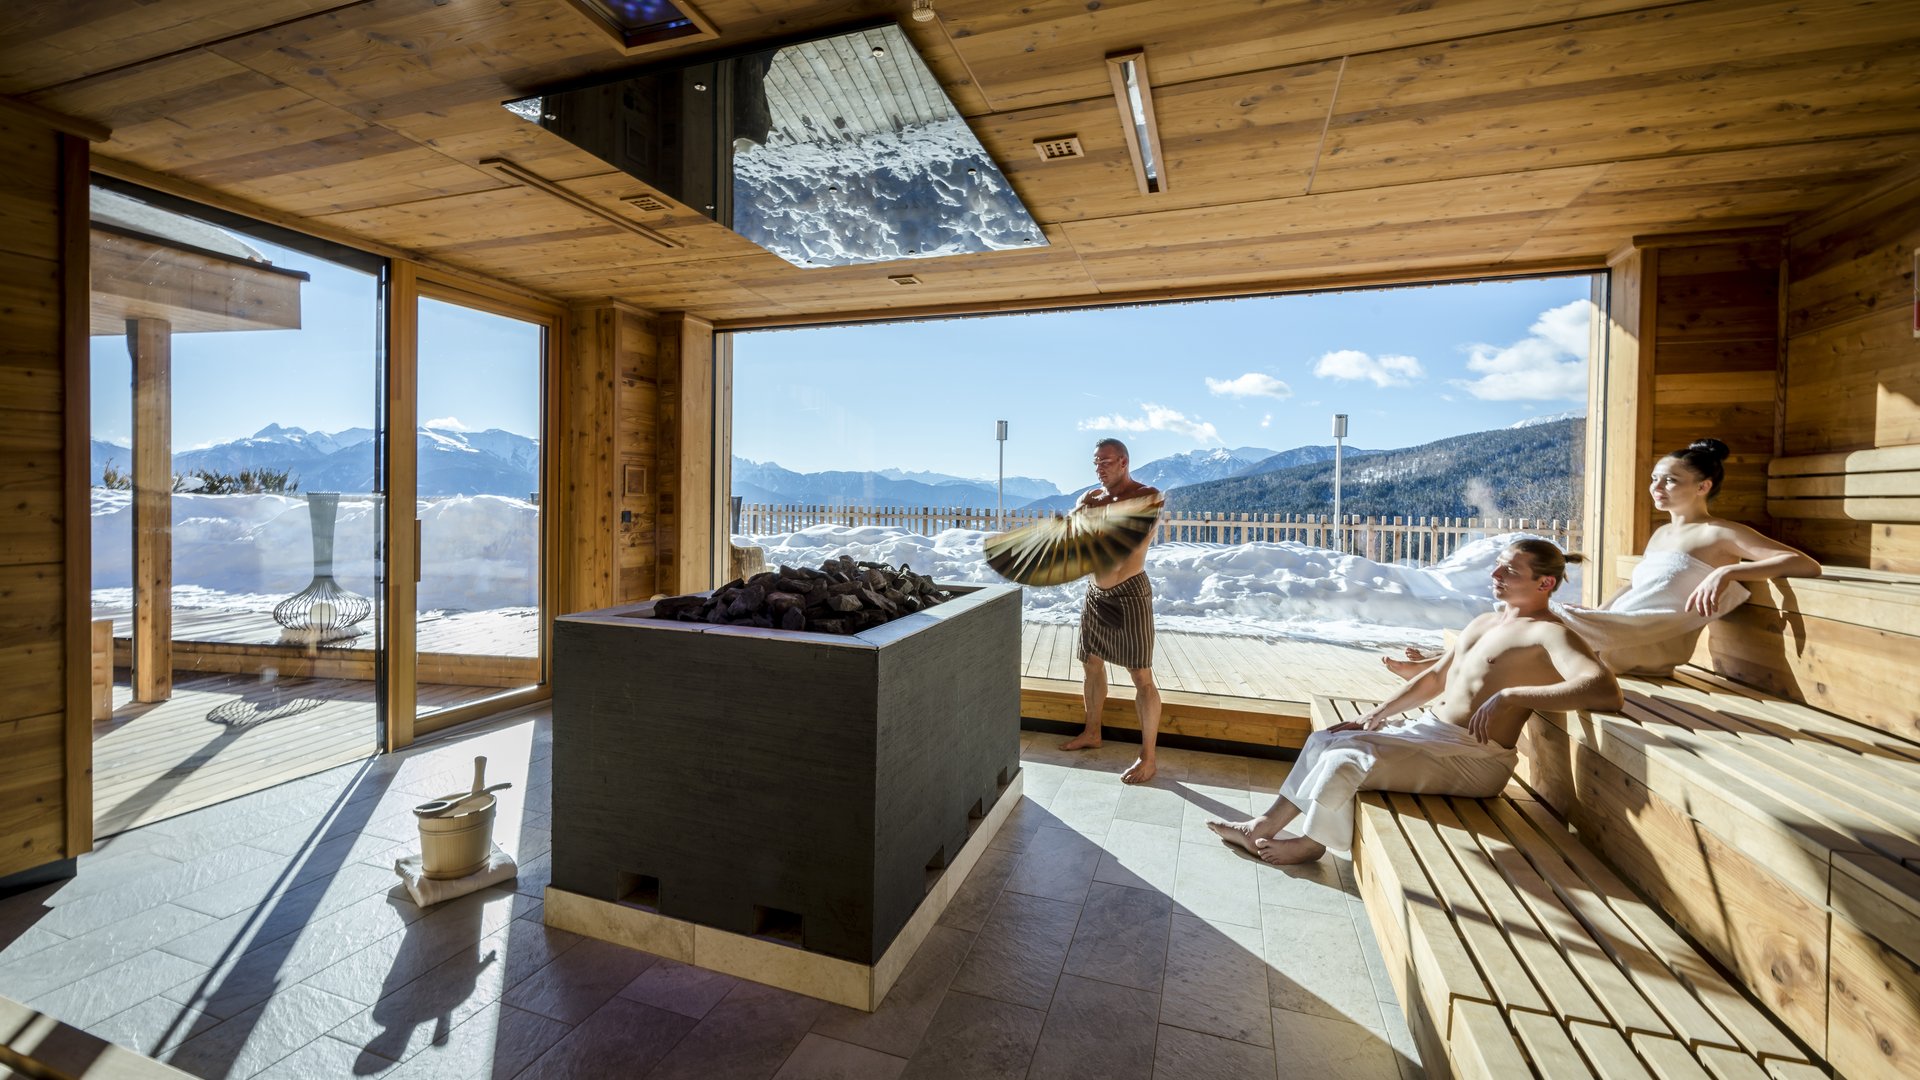 Hotel con sauna in camera in Alto Adige? Tratterhof!